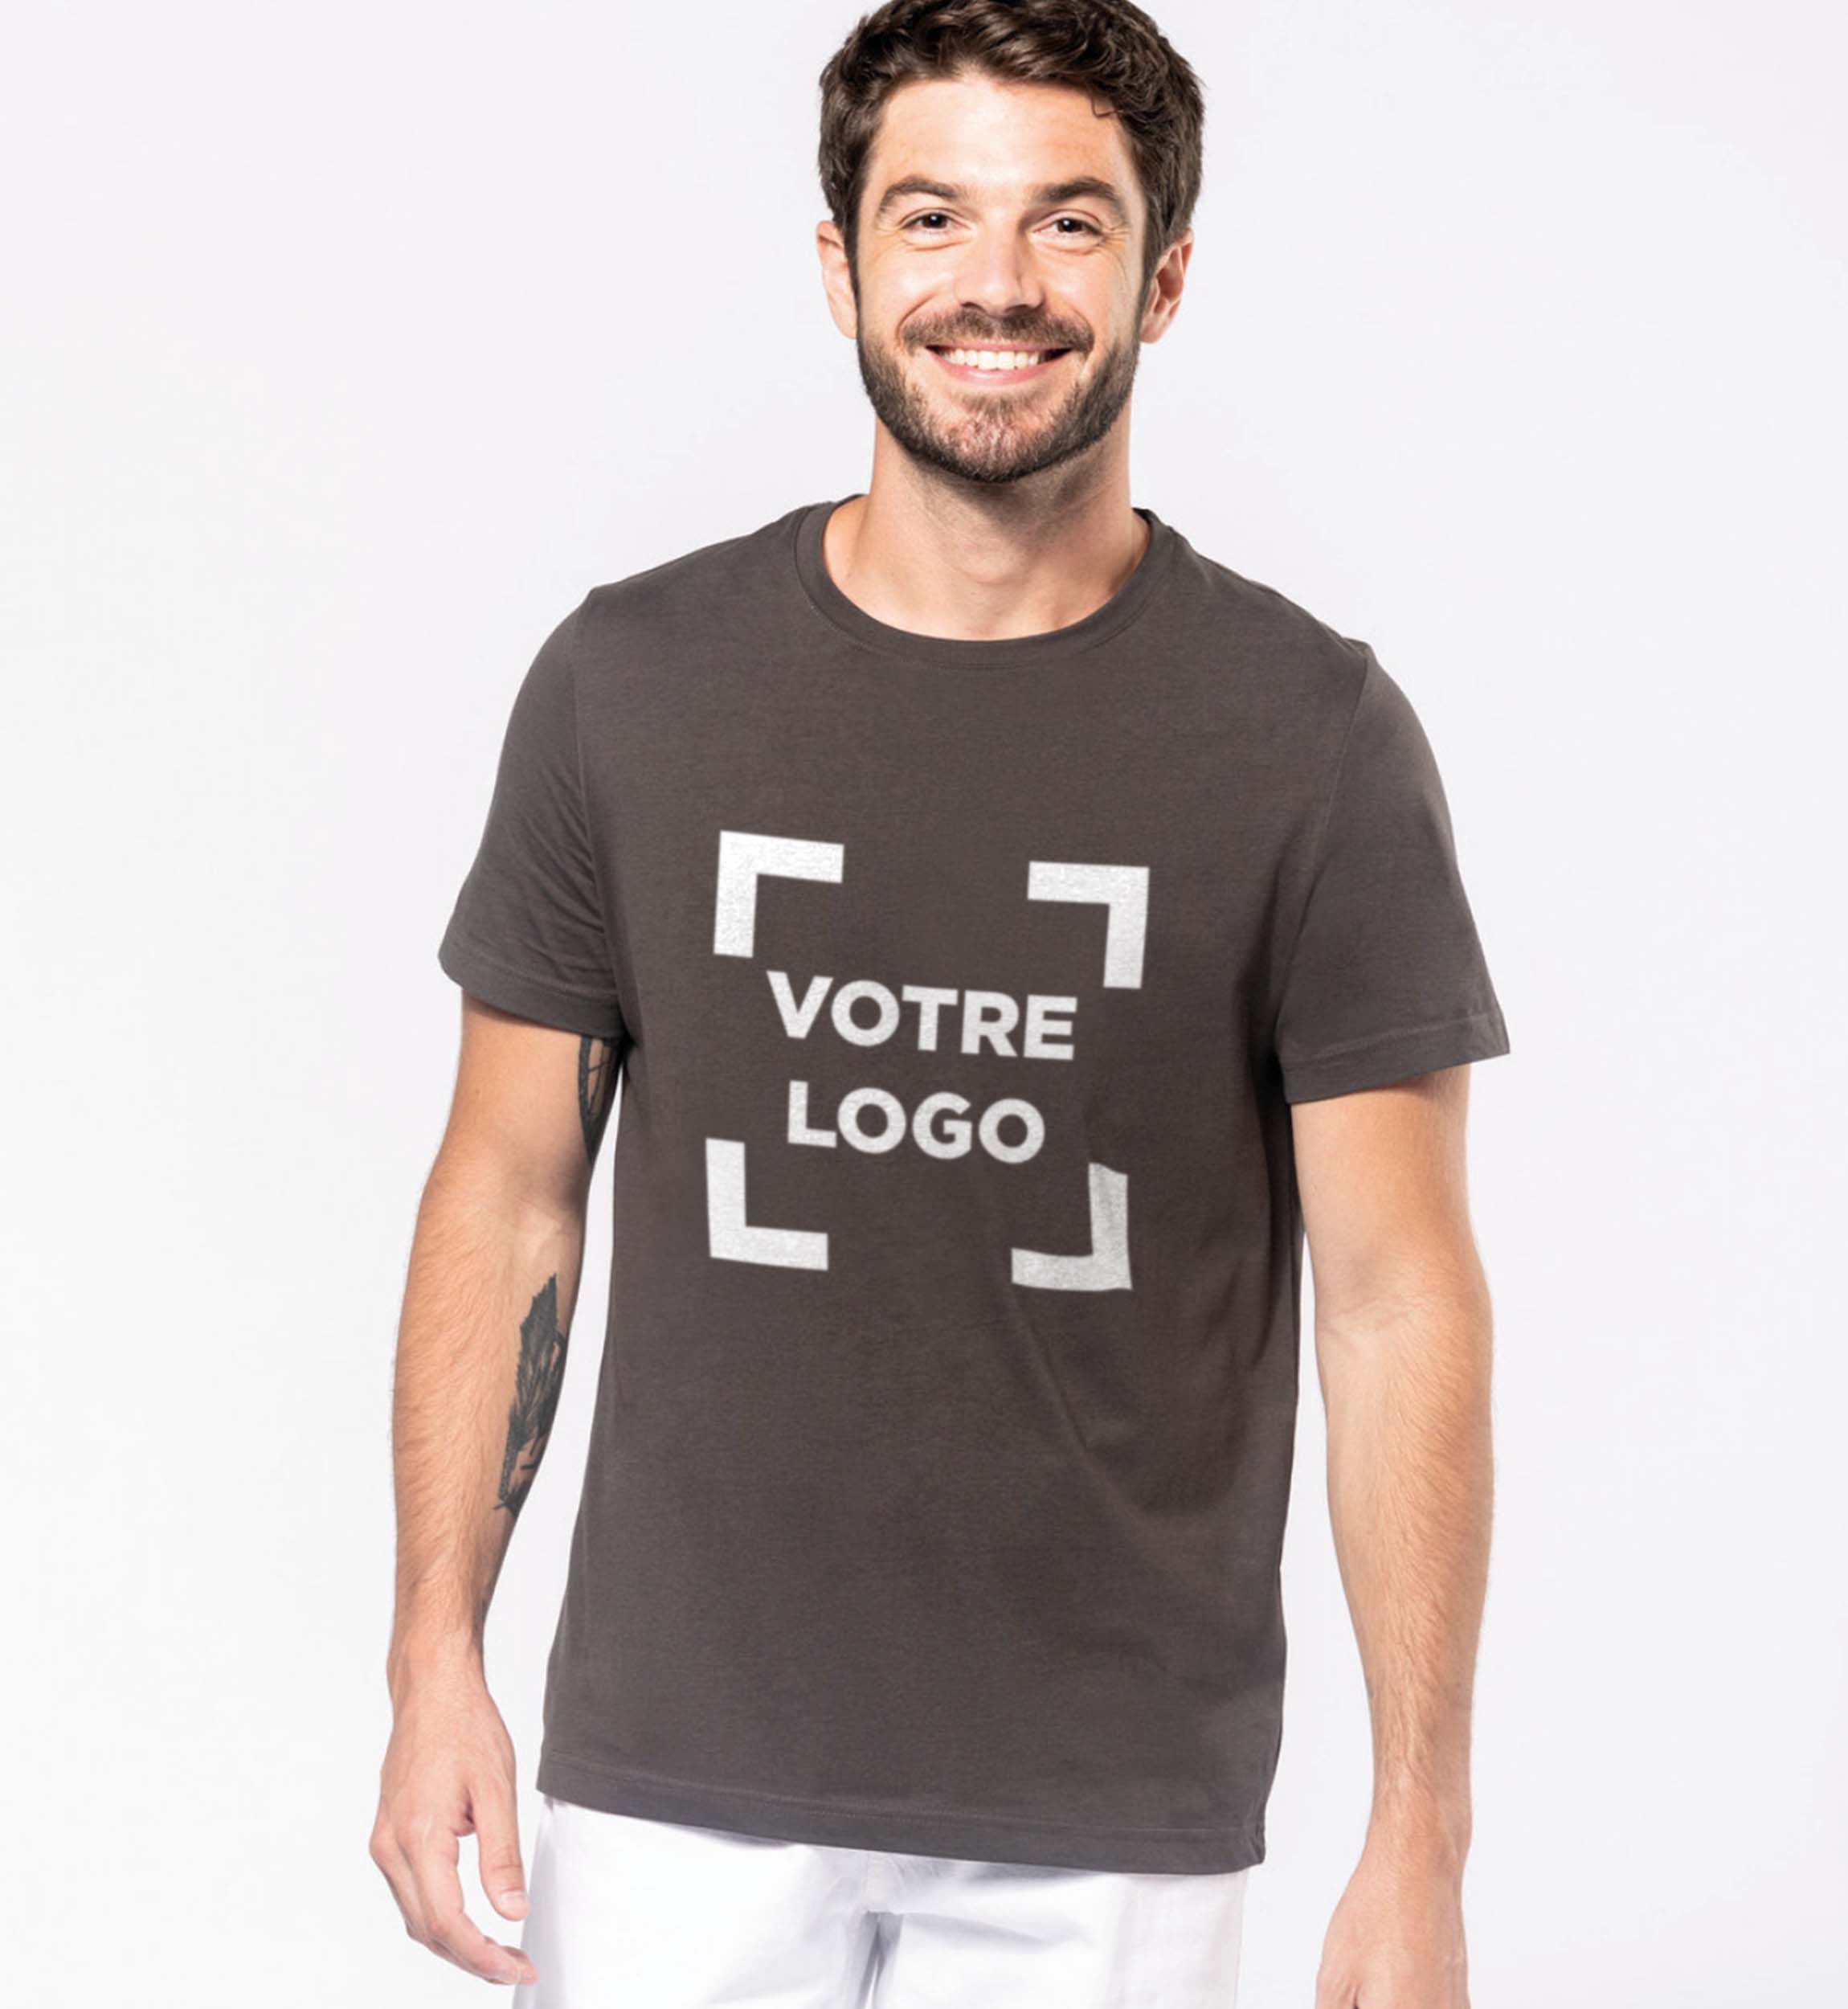 exemple de T-shirt Homme 180g couleur chocolat avec logo imprimé